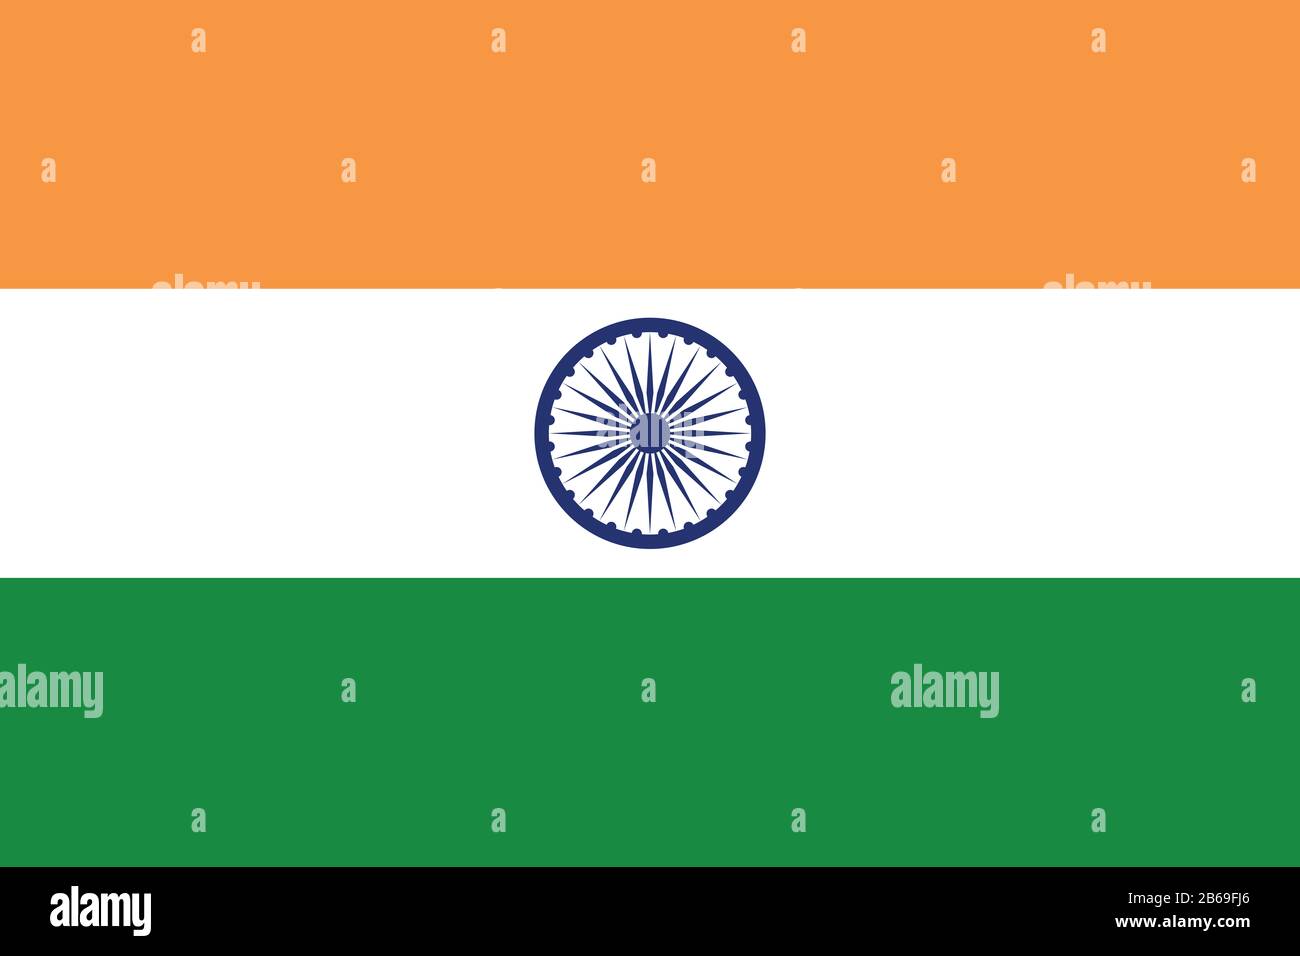 Drapeau de l'Inde - Rapport standard du drapeau indien - mode couleur RVB réel Banque D'Images